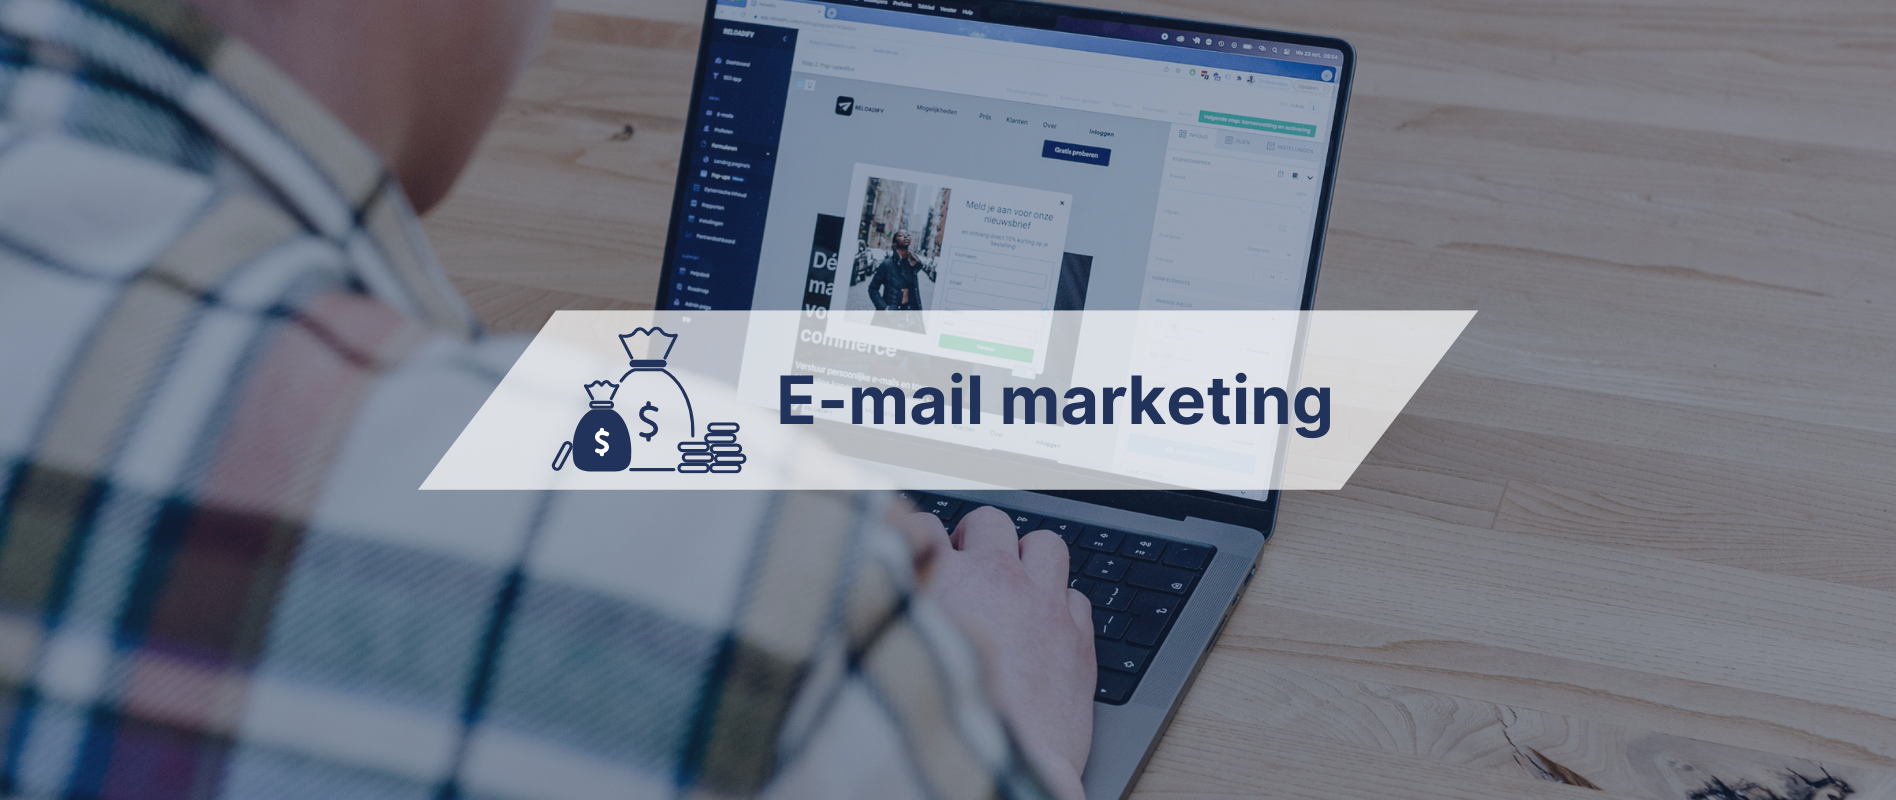 Wat is opt in en hoe werkt het voor e-mail marketing? Met best practices! 